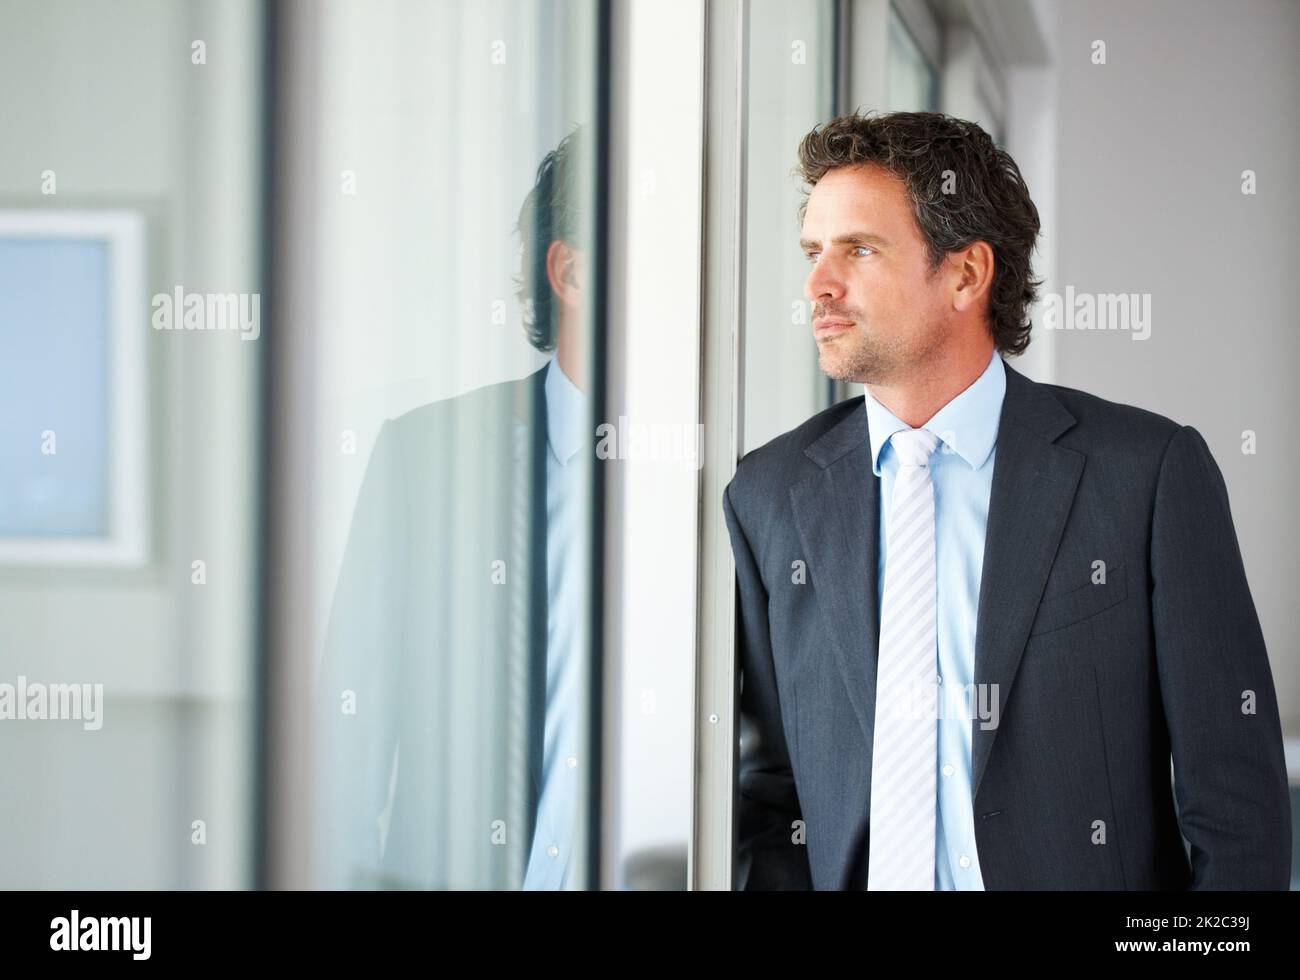 Uomo d'affari che guarda fuori attraverso la porta. Uomo d'affari intelligente di mezza età che guarda fuori attraverso una porta di vetro. Foto Stock